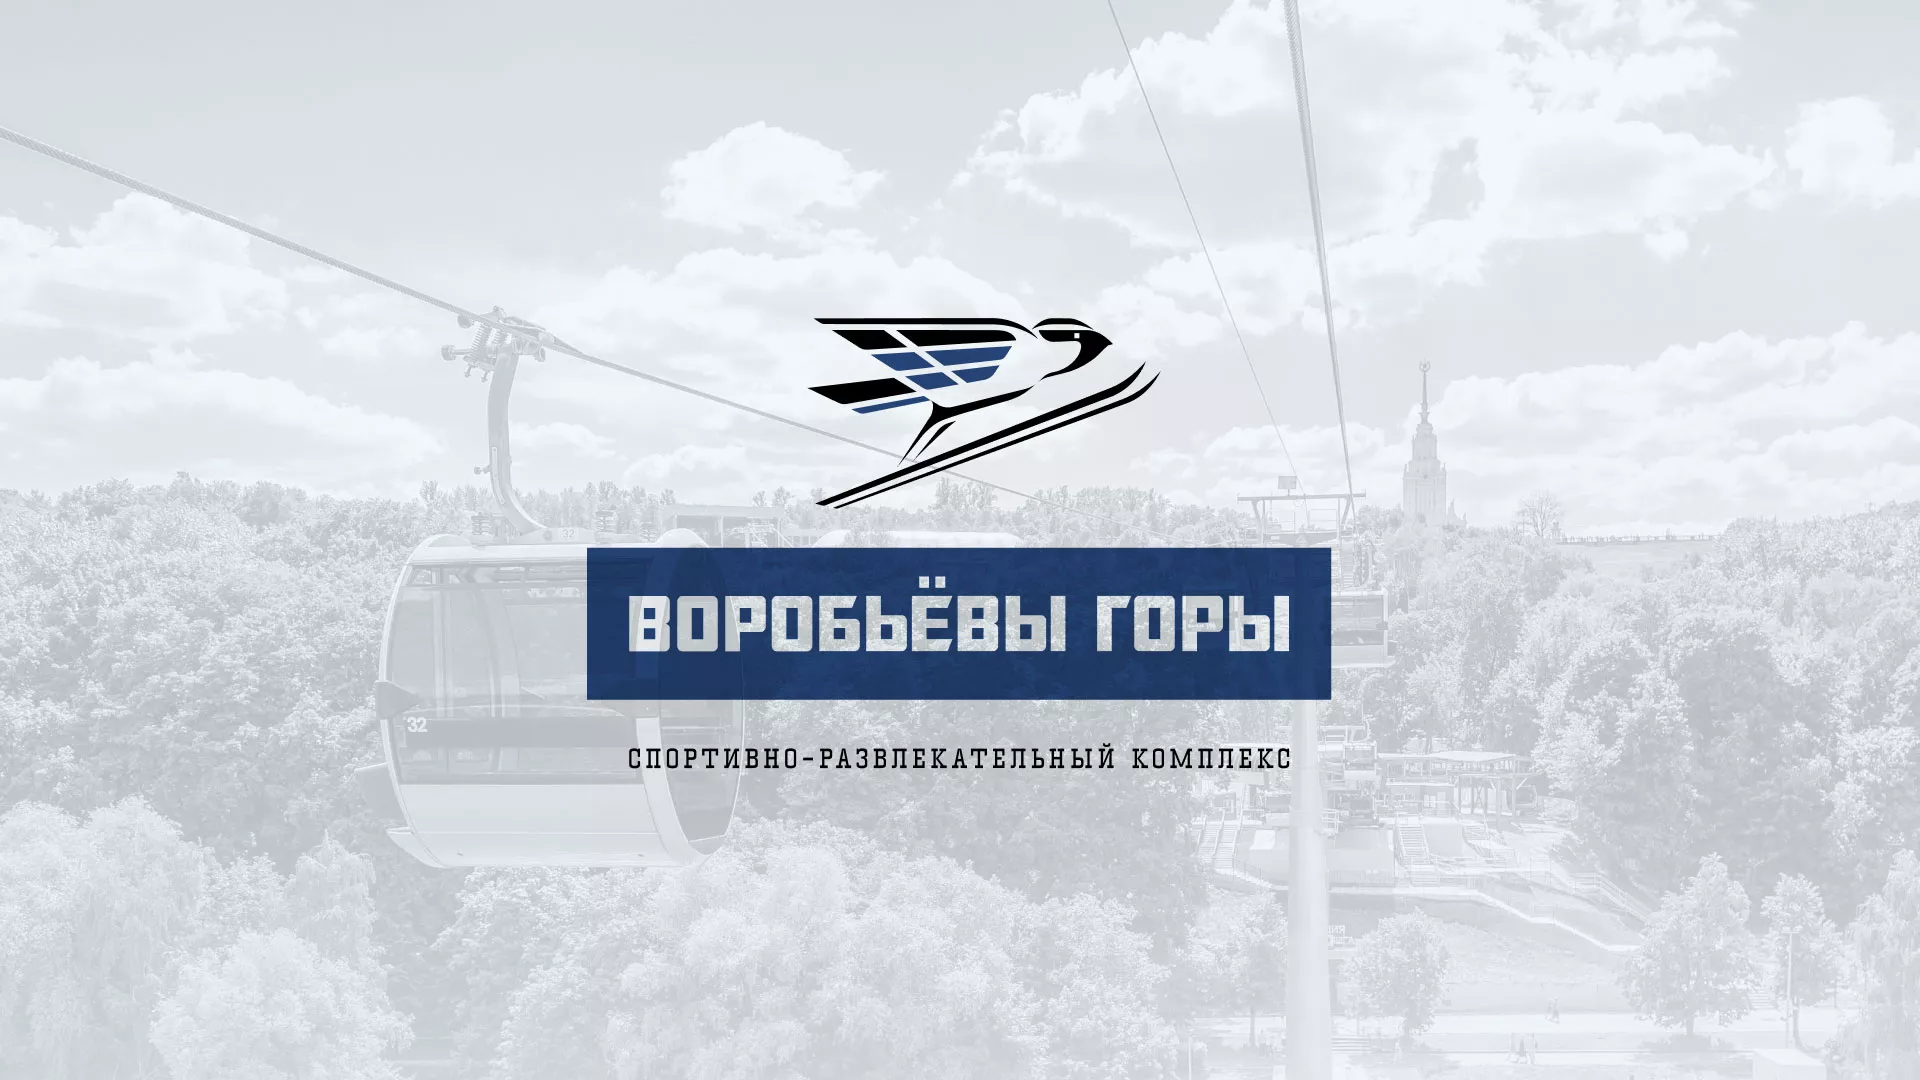 Разработка сайта в Белово для спортивно-развлекательного комплекса «Воробьёвы горы»